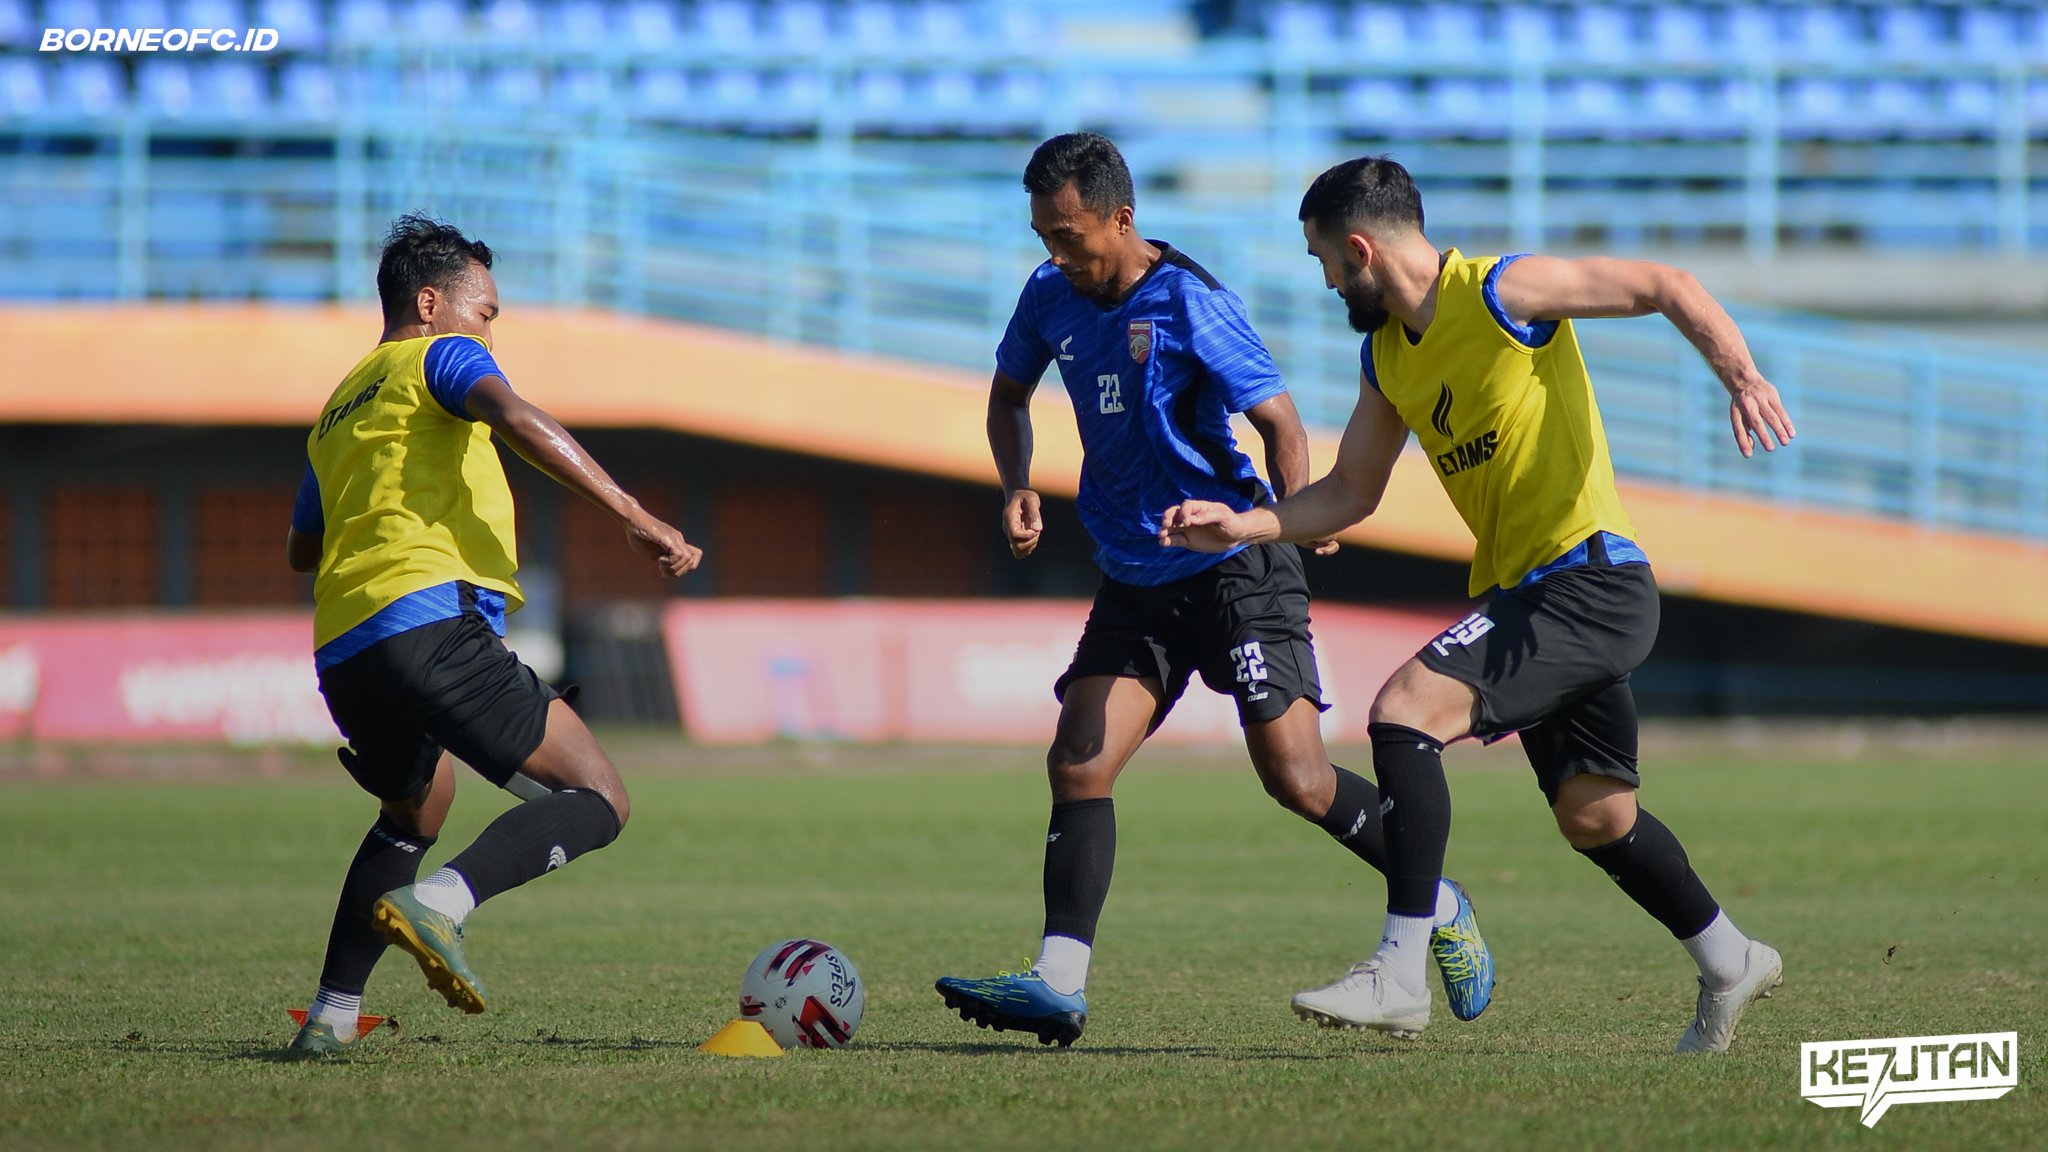 Borneo FC Gelar Latihan Persiapan Liga 1 2021 pada Hari Pertama Puasa